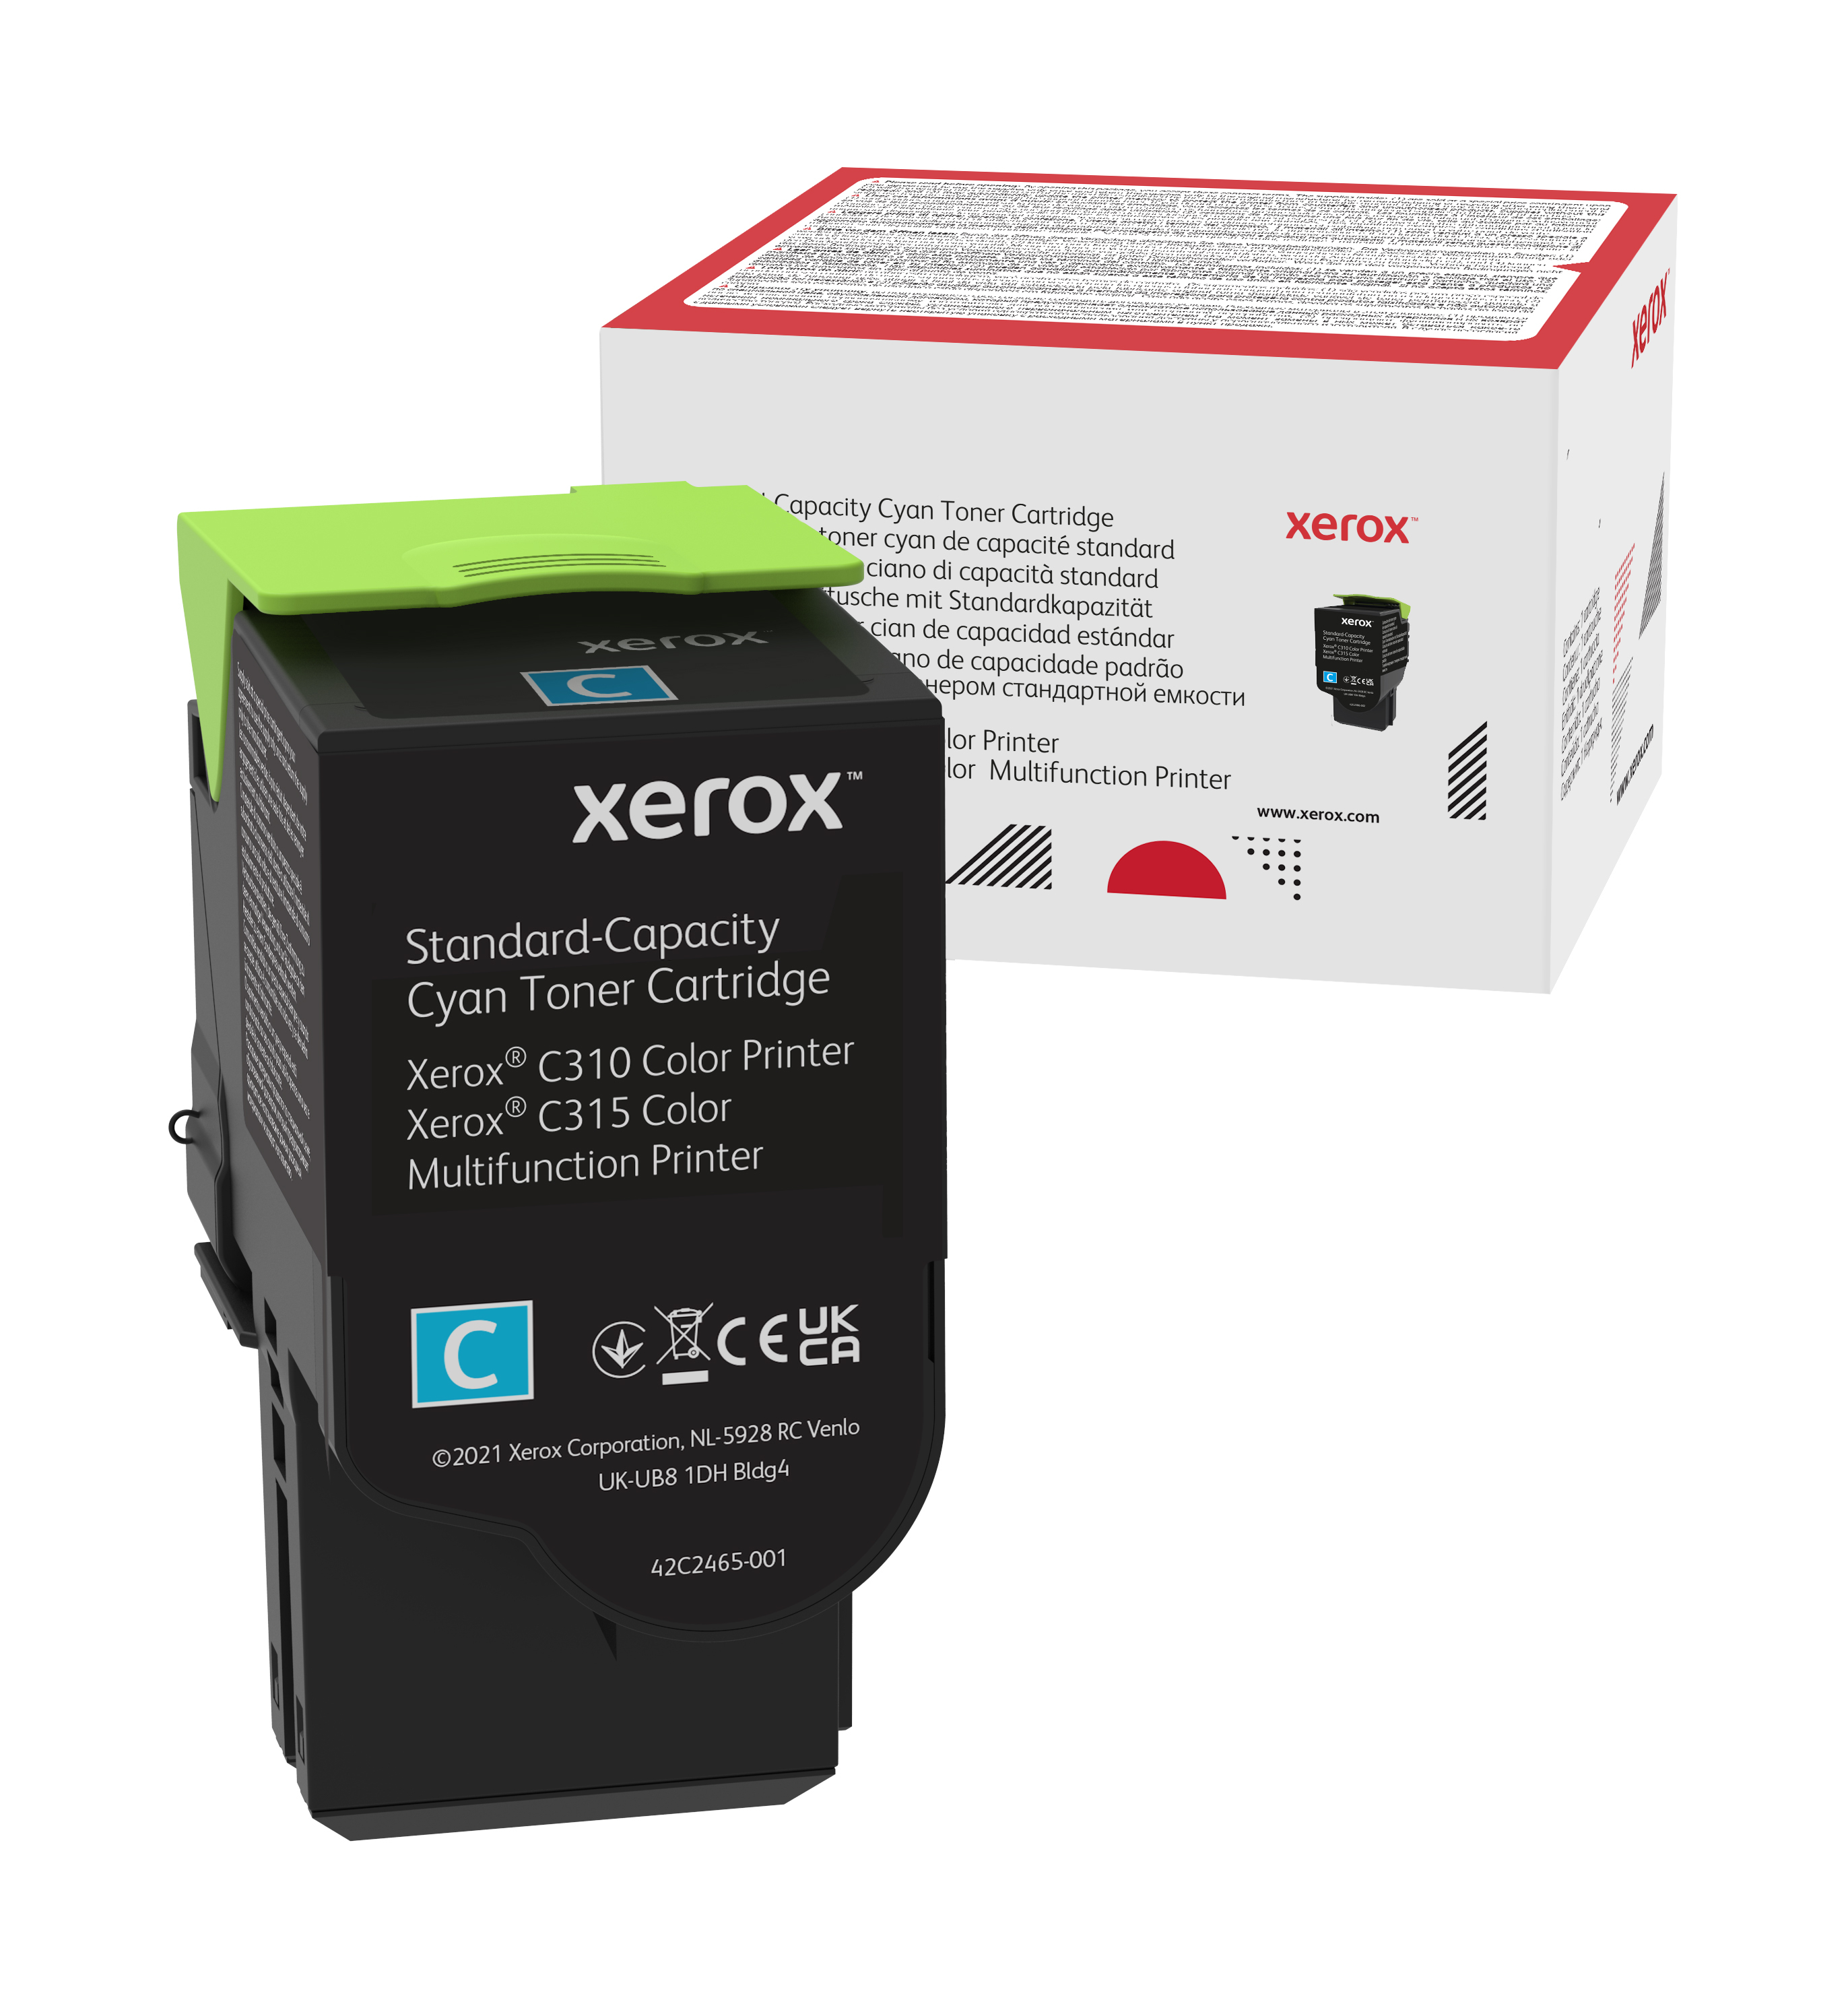 Xerox C310/C315 Cartuccia toner capacità standard ciano (2.000 pagine)  006R04357 Genuine Xerox Supplies